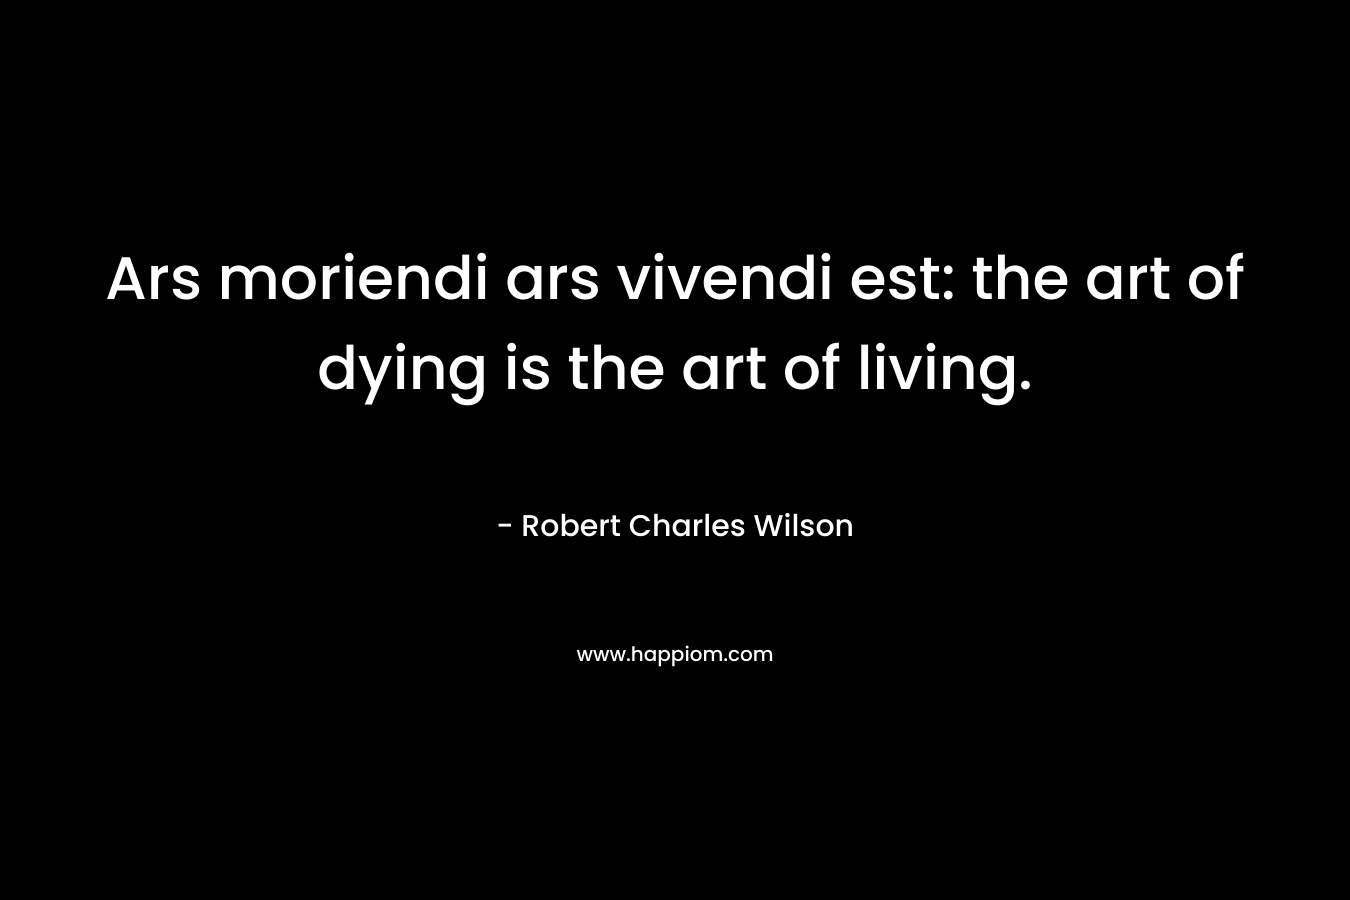 Ars moriendi ars vivendi est: the art of dying is the art of living.